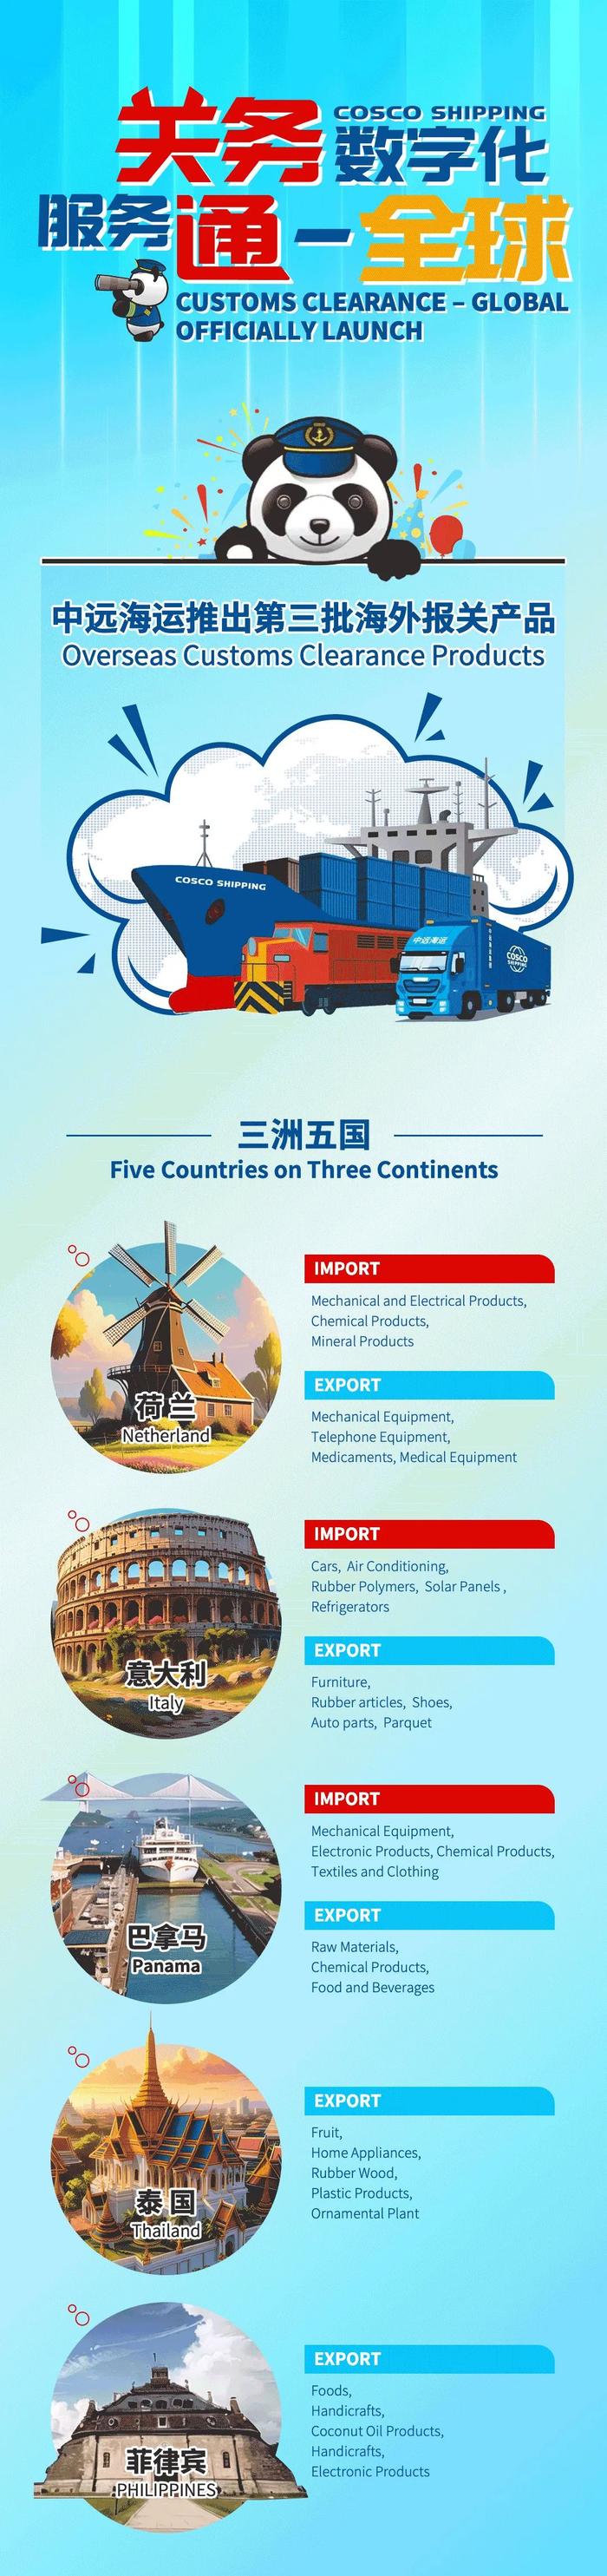 关务全球化 服务通全球！中远海控推出第三批海外报关产品 | 航运界